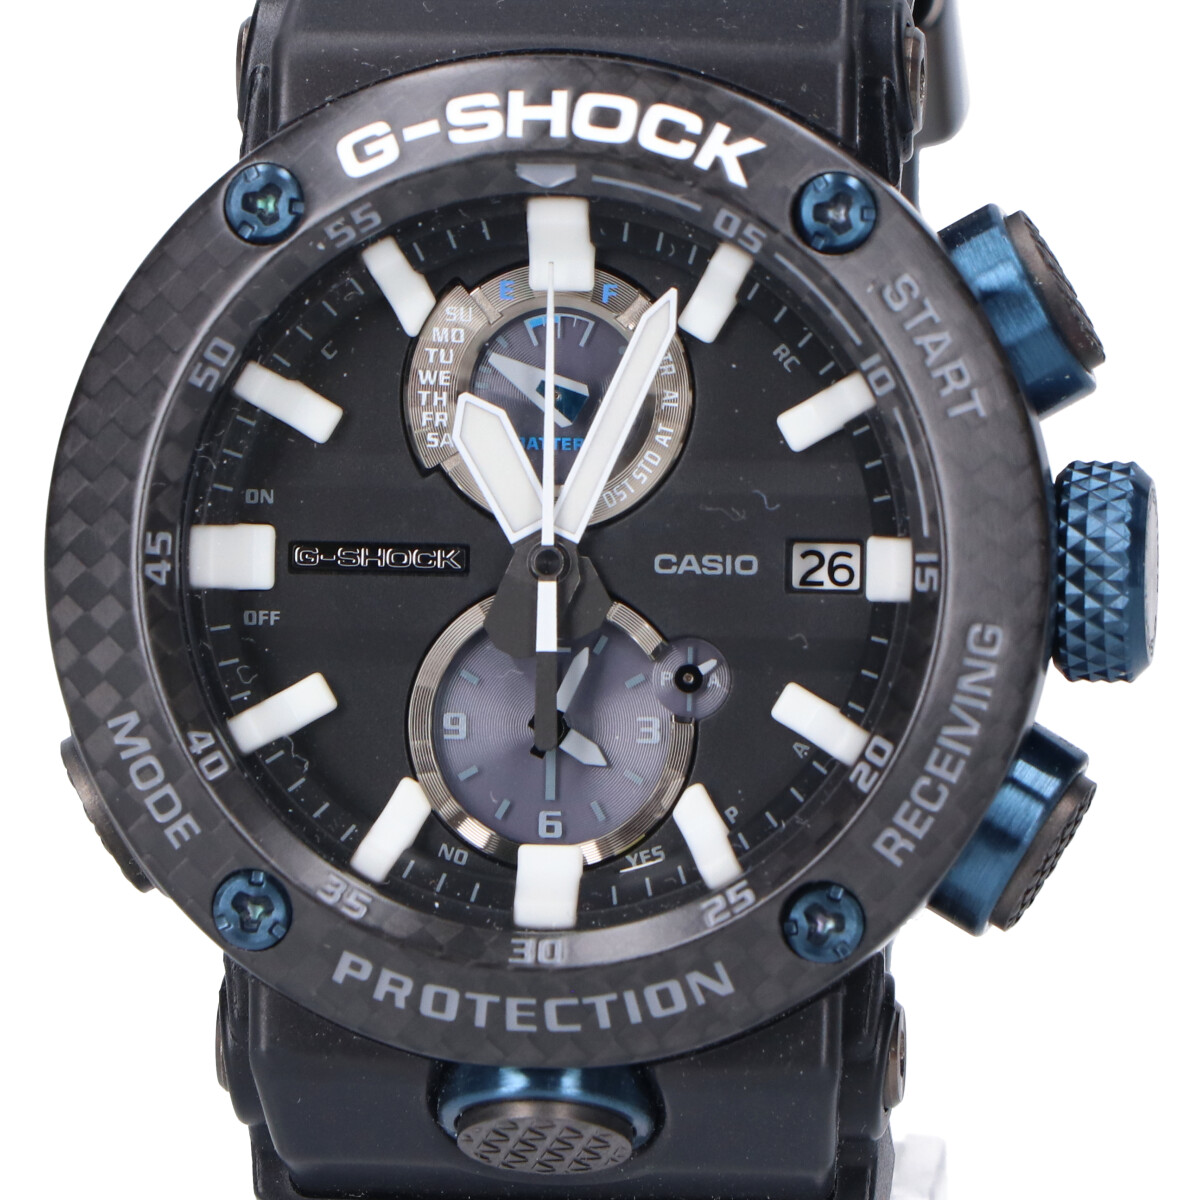 G-SHOCKのグラビティマスターシリーズ GWR-B1000-1A1JF マスターオブジーエアー ソーラー腕時計の買取実績です。